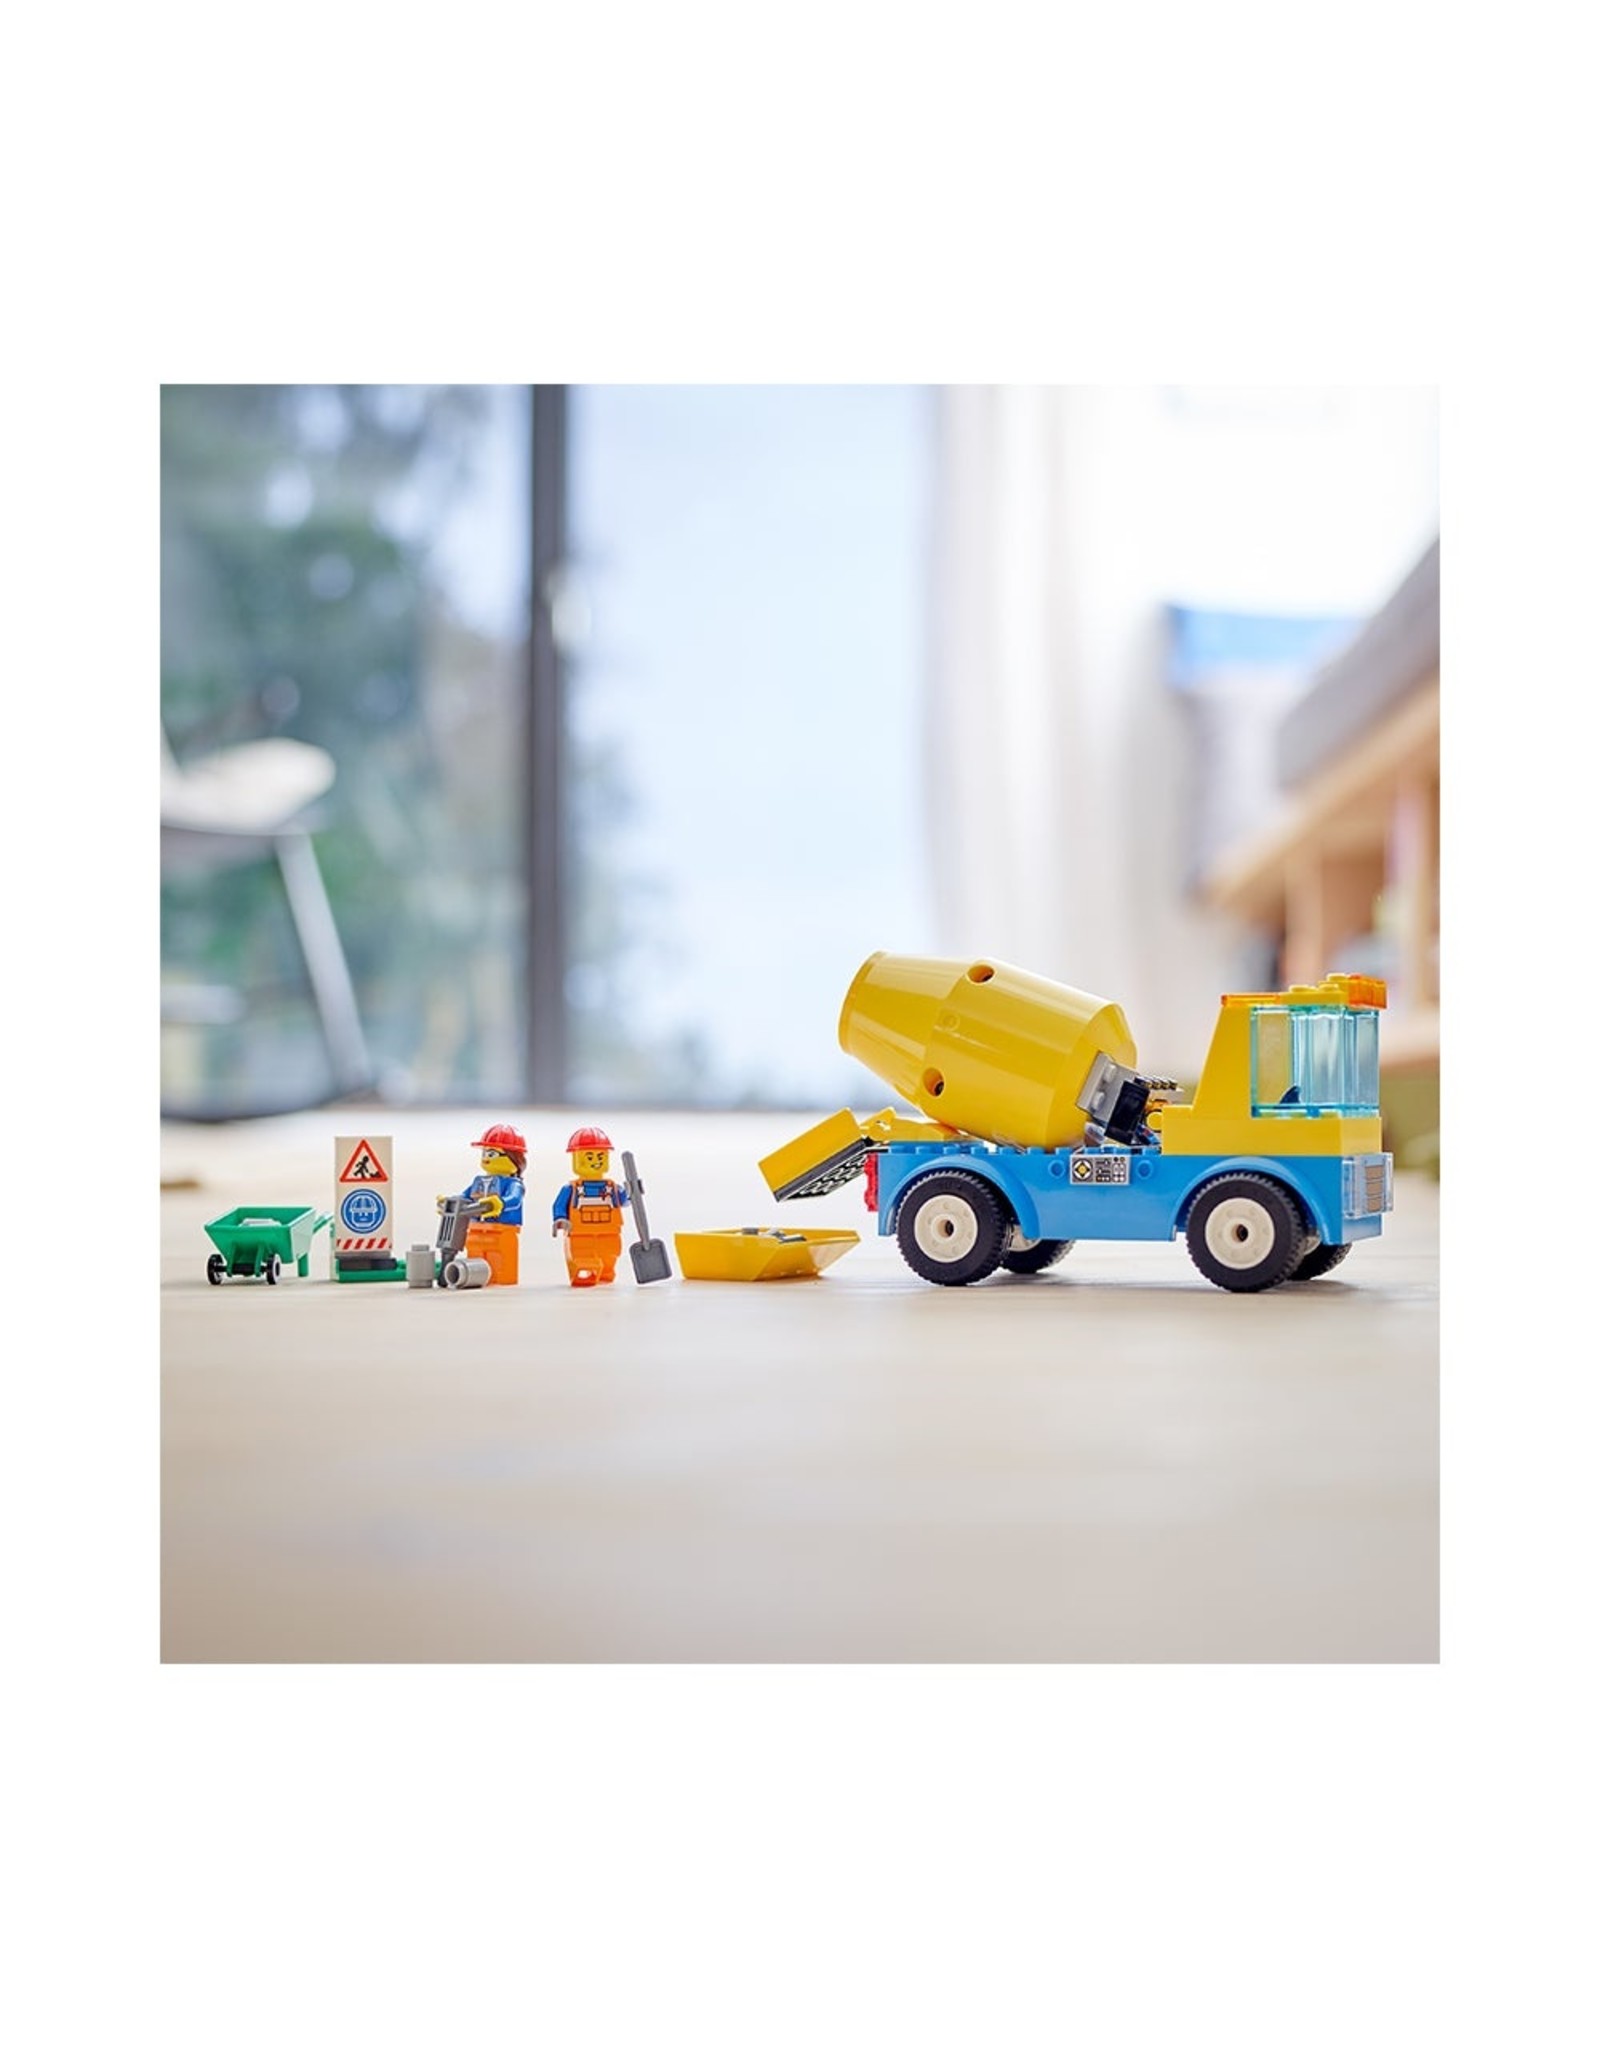 LEGO City Cement Mixer Truck 60325 Building Kit (85 Pieces)